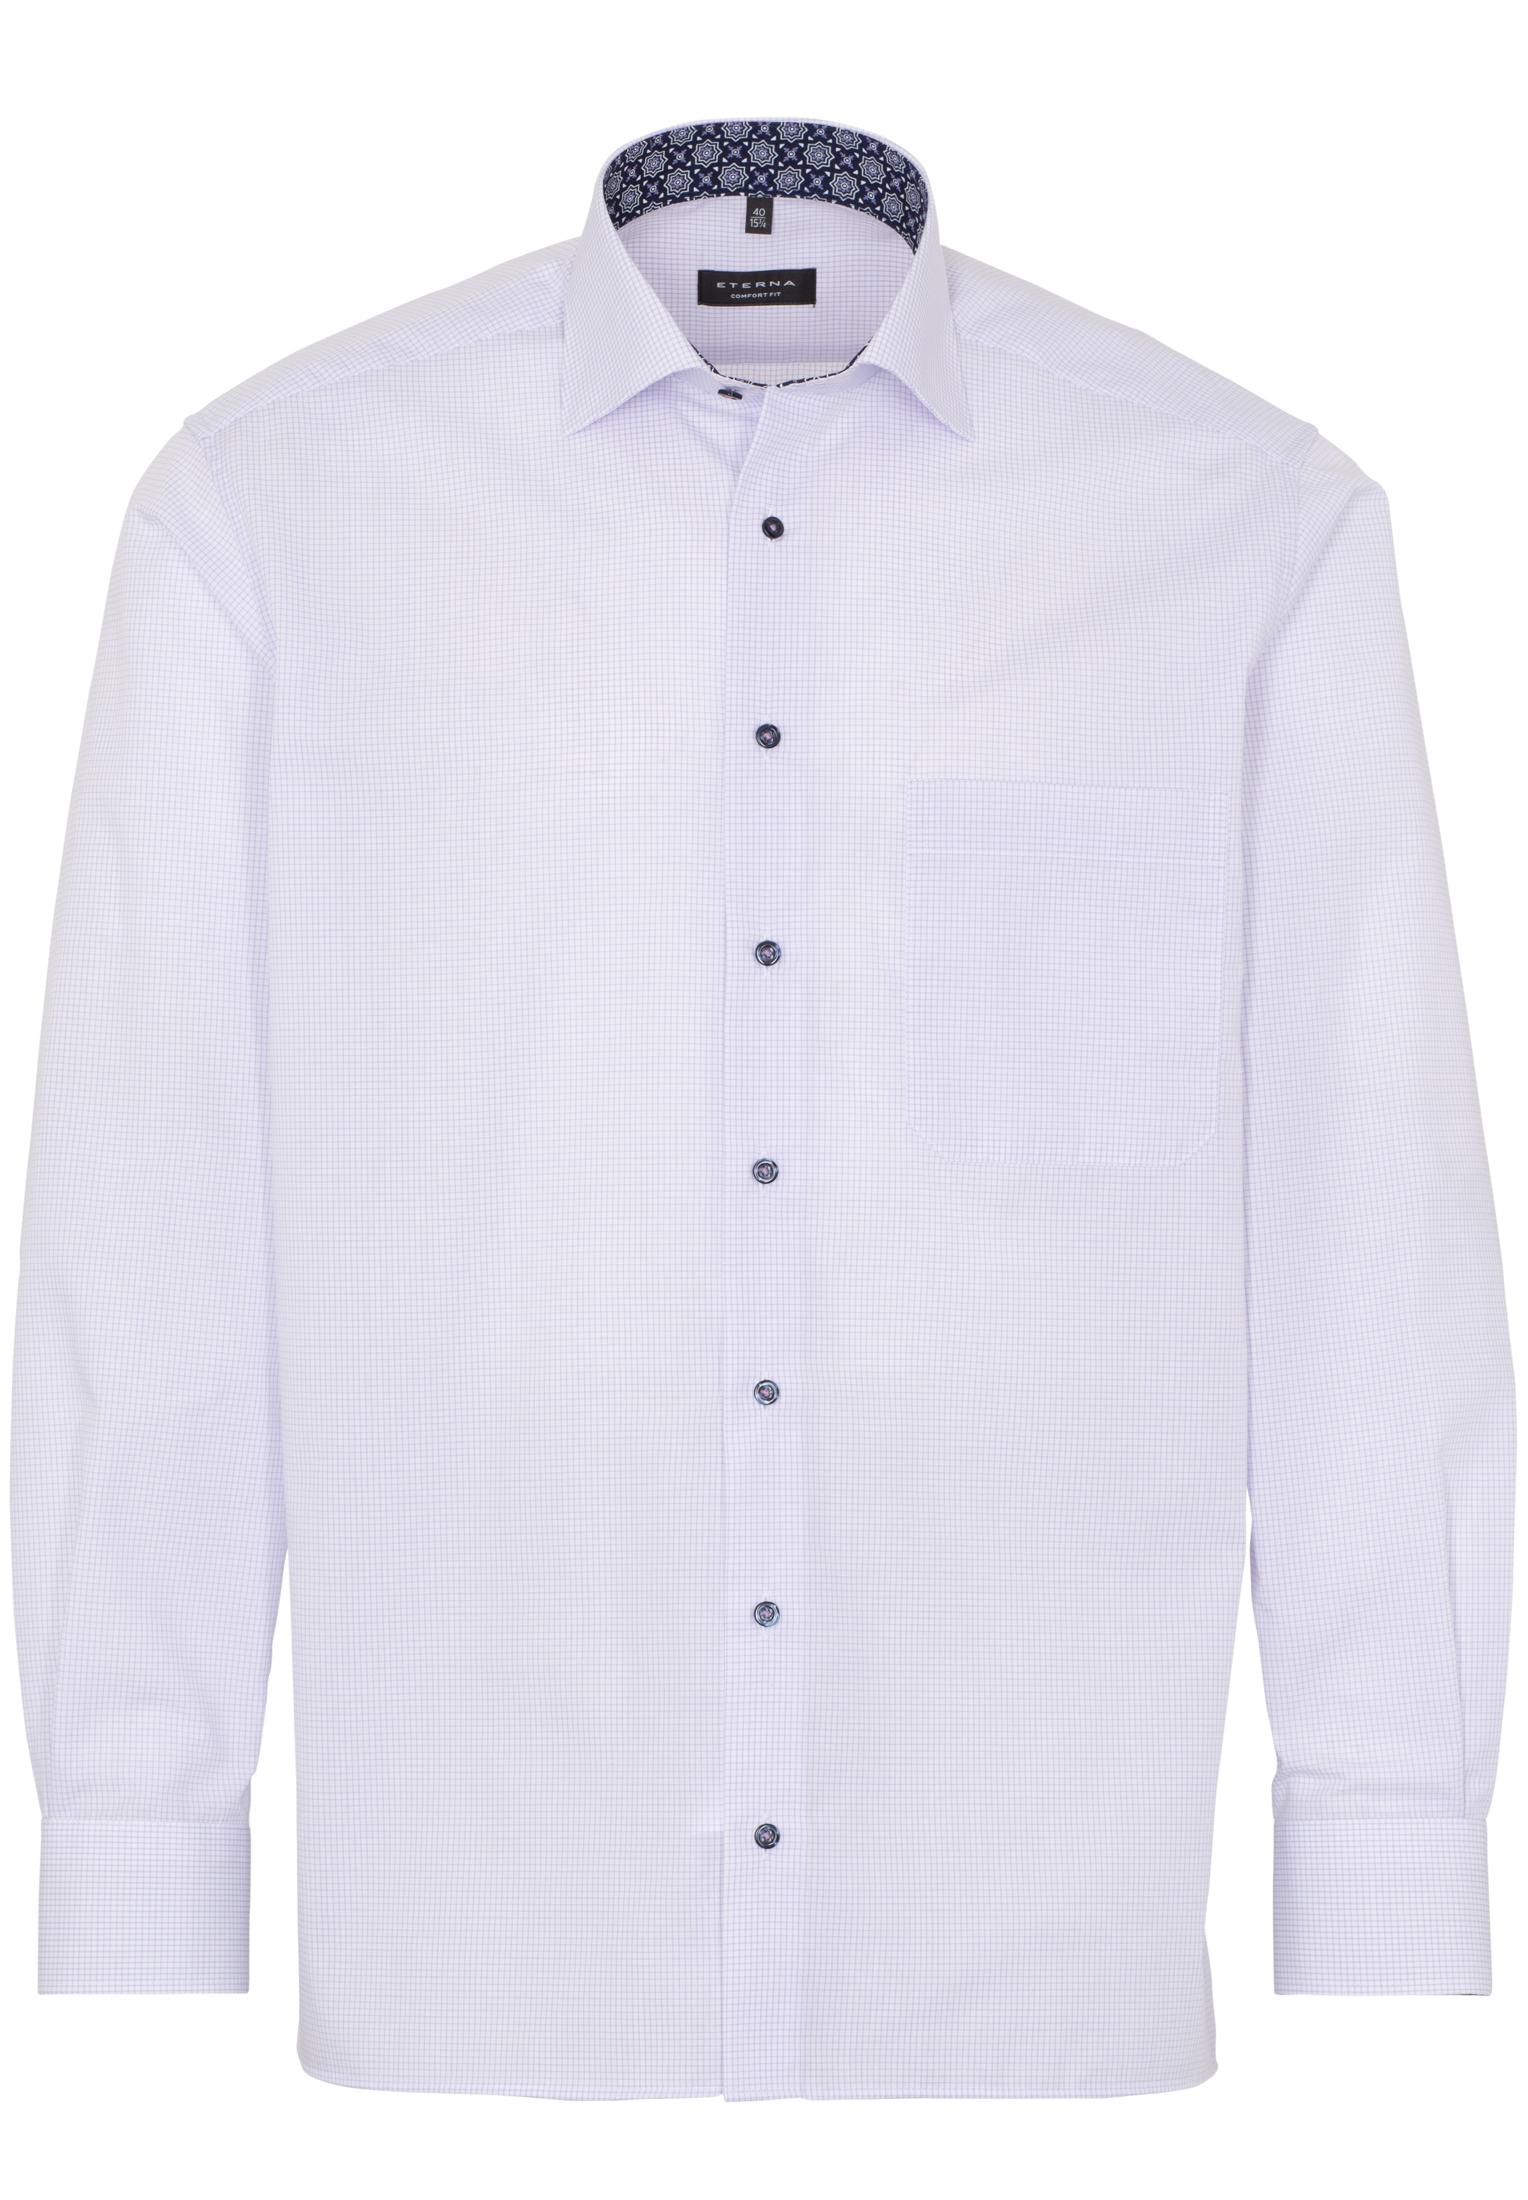 Мужская рубашка ETERNA, белая, цвет белый, размер 46 - фото 6